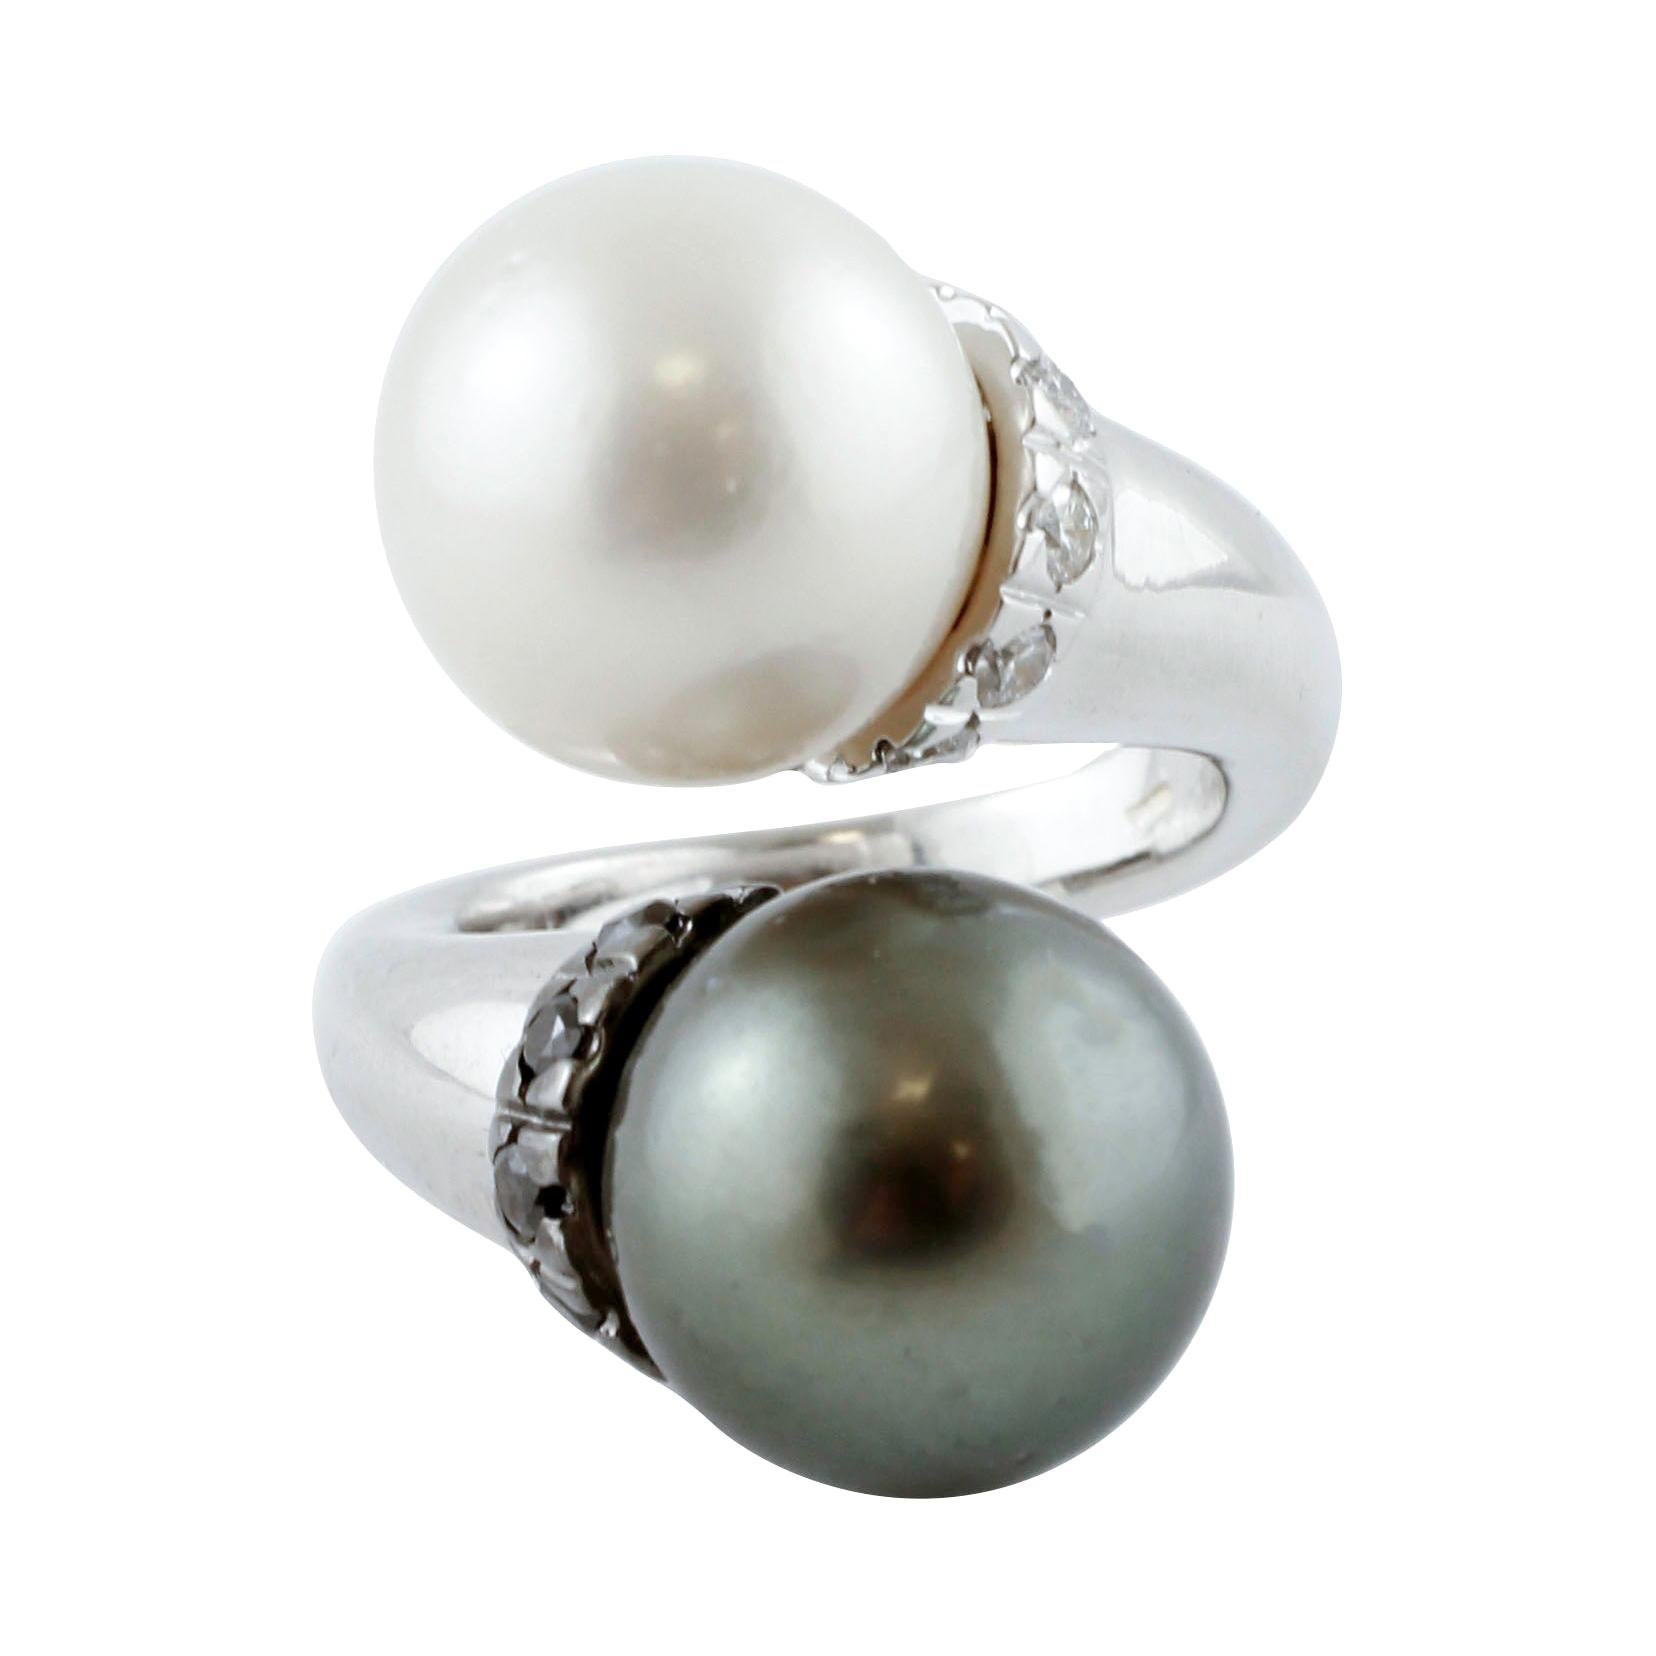 Tahiti and White Pearls, White and Black Diamonds, 18 Karat White Gold Ring